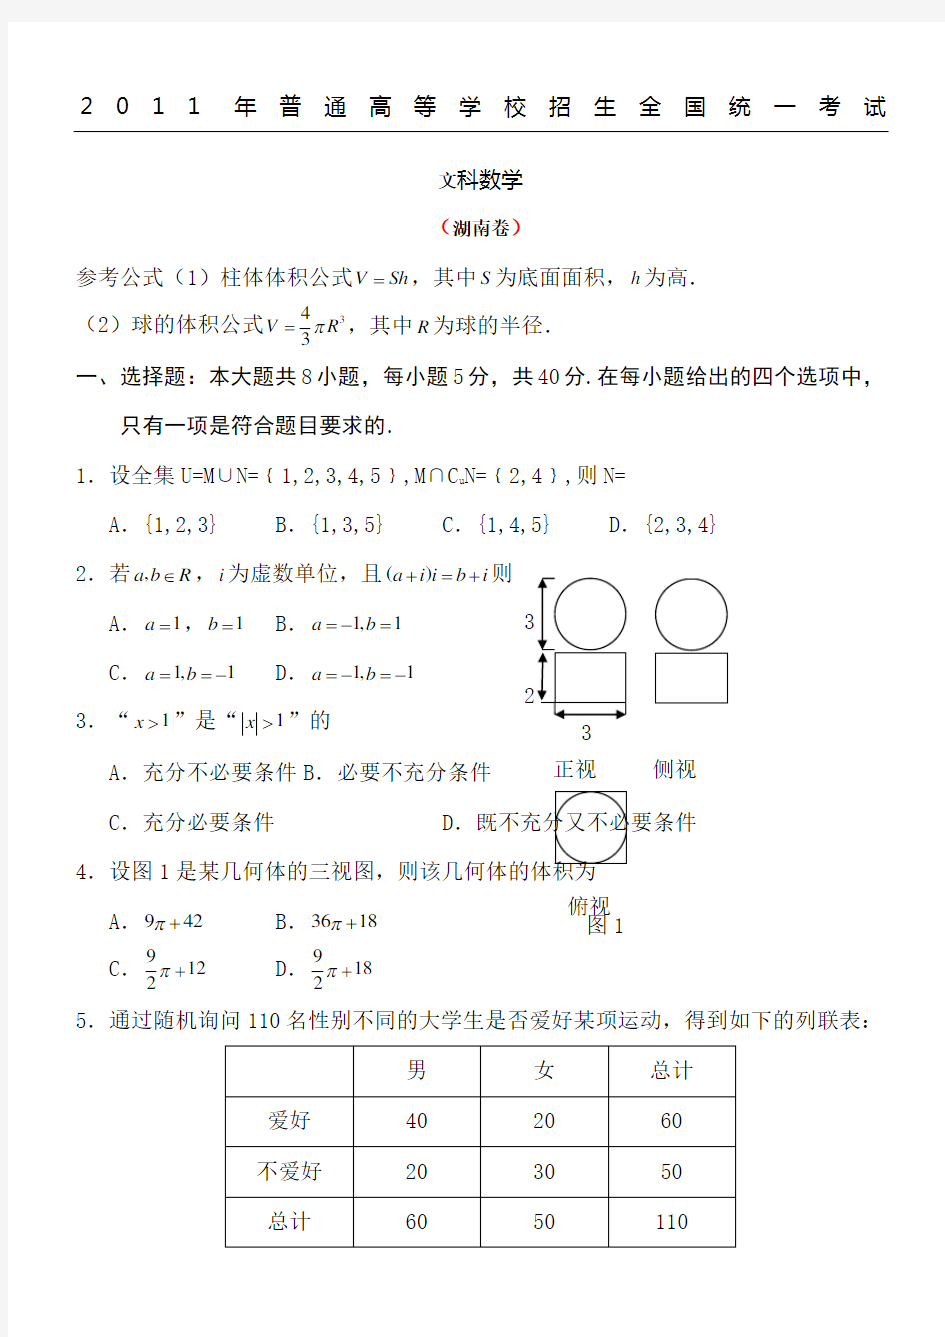 2011年高考湖南卷文科数学试题及答案